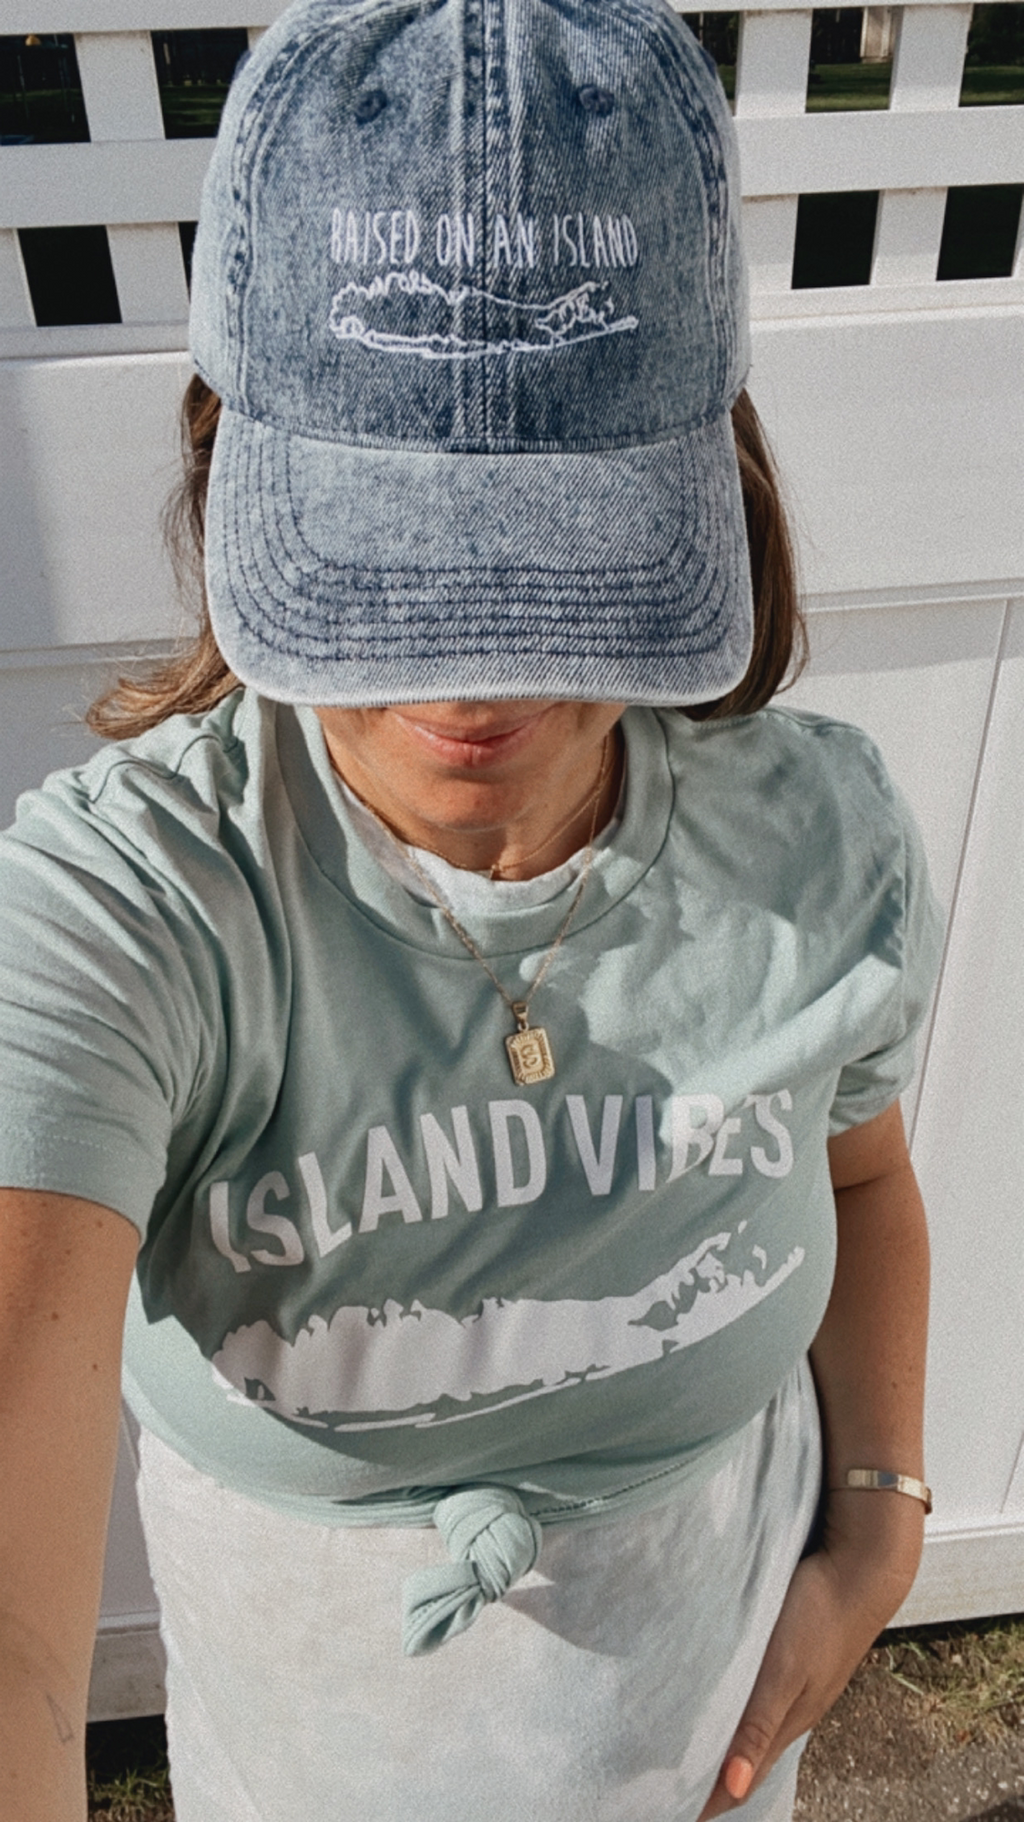 RAISED ON AN ISLAND LI|NY